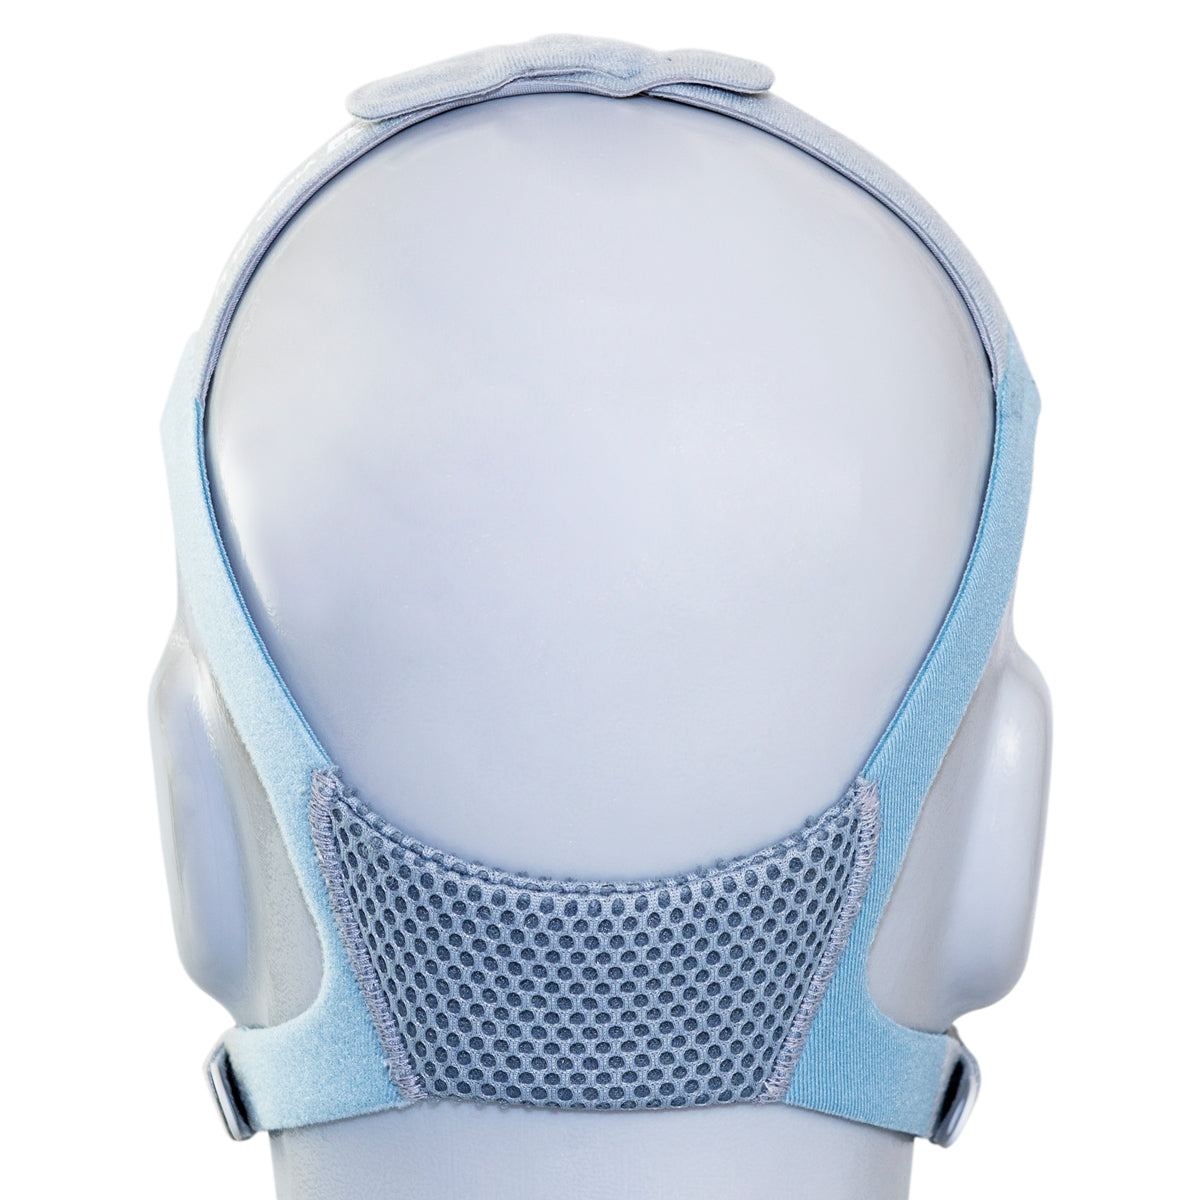 Headgear for Vitera CPAP/BiPAP Masks